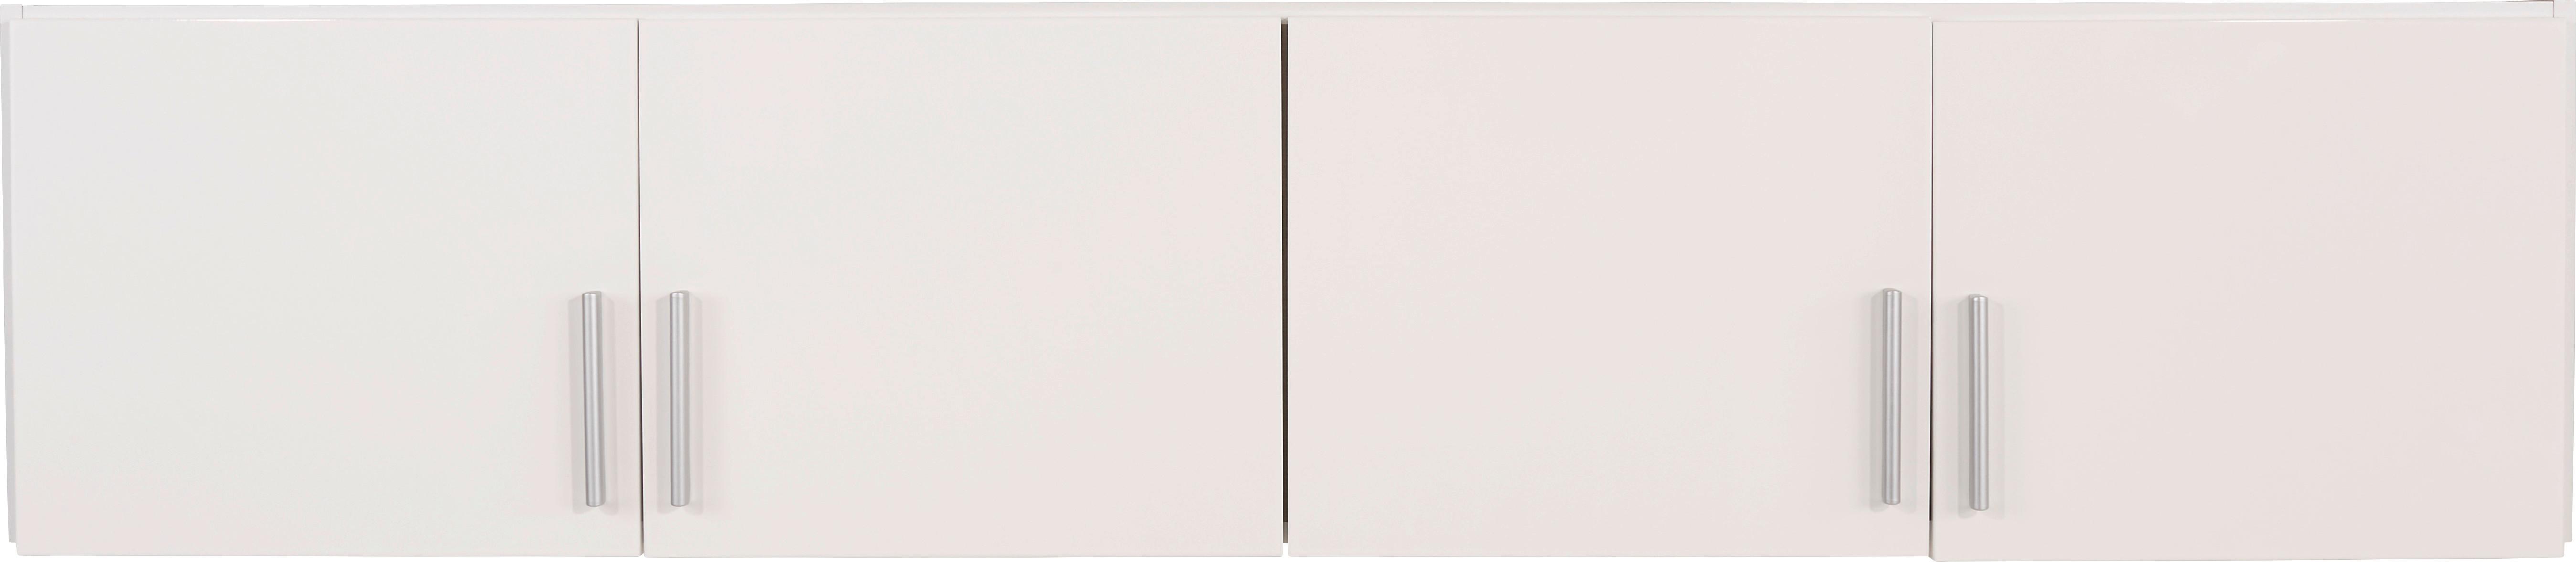 Nástavec Na Šatní Skříň Ke 4-Dv. Skříni Celle - bílá/barvy hliníku, Moderní, dřevo/plast (181/40/54cm)